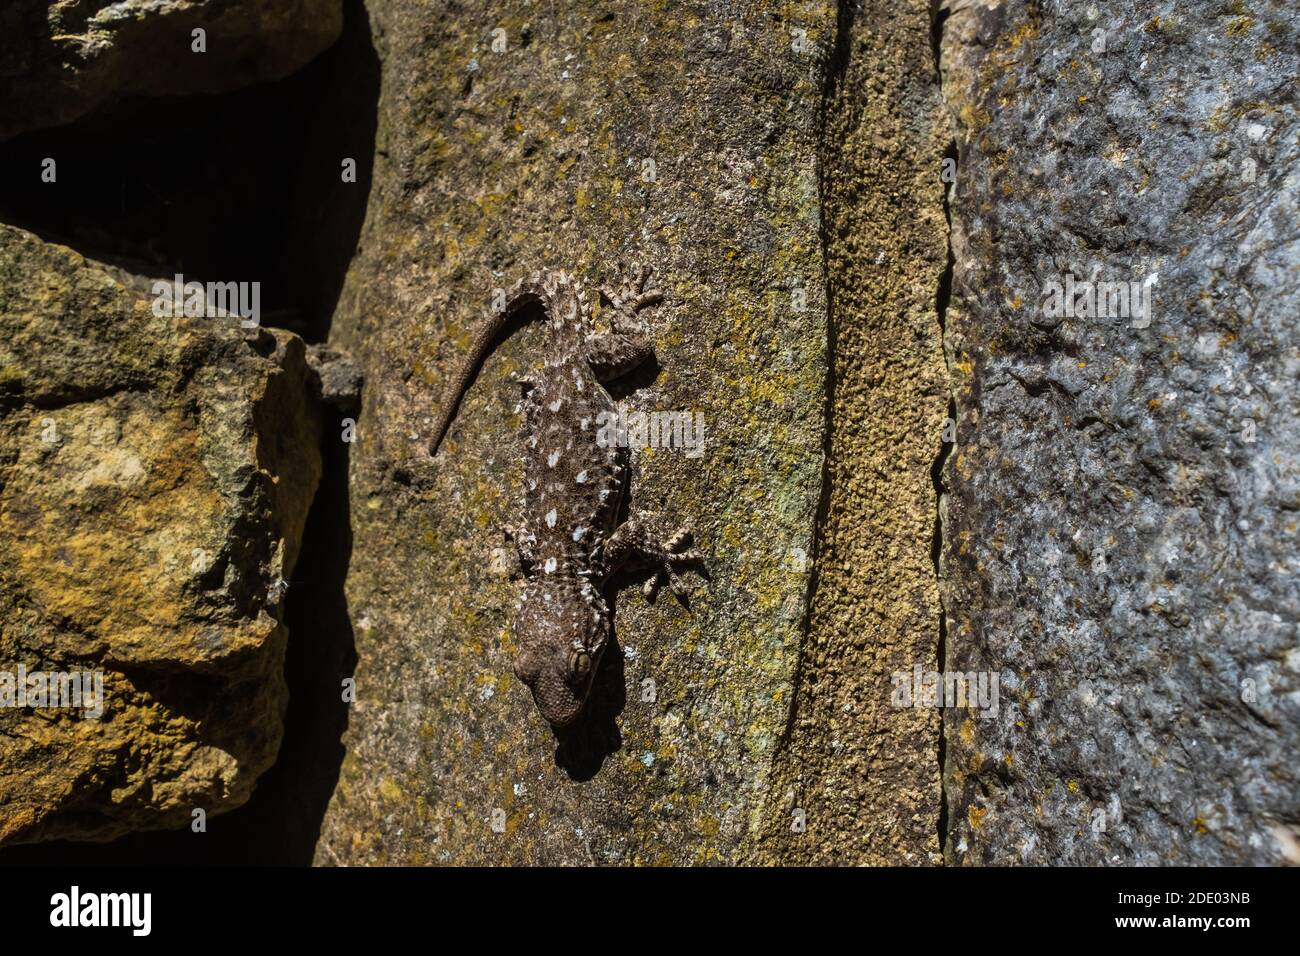 Le Gecko mauresque (Tarentola Mauritanica) est une espèce typique du gommage méditerranéen. Cet exemple en embuscade sur un rocher, photographié au Portugal. Banque D'Images